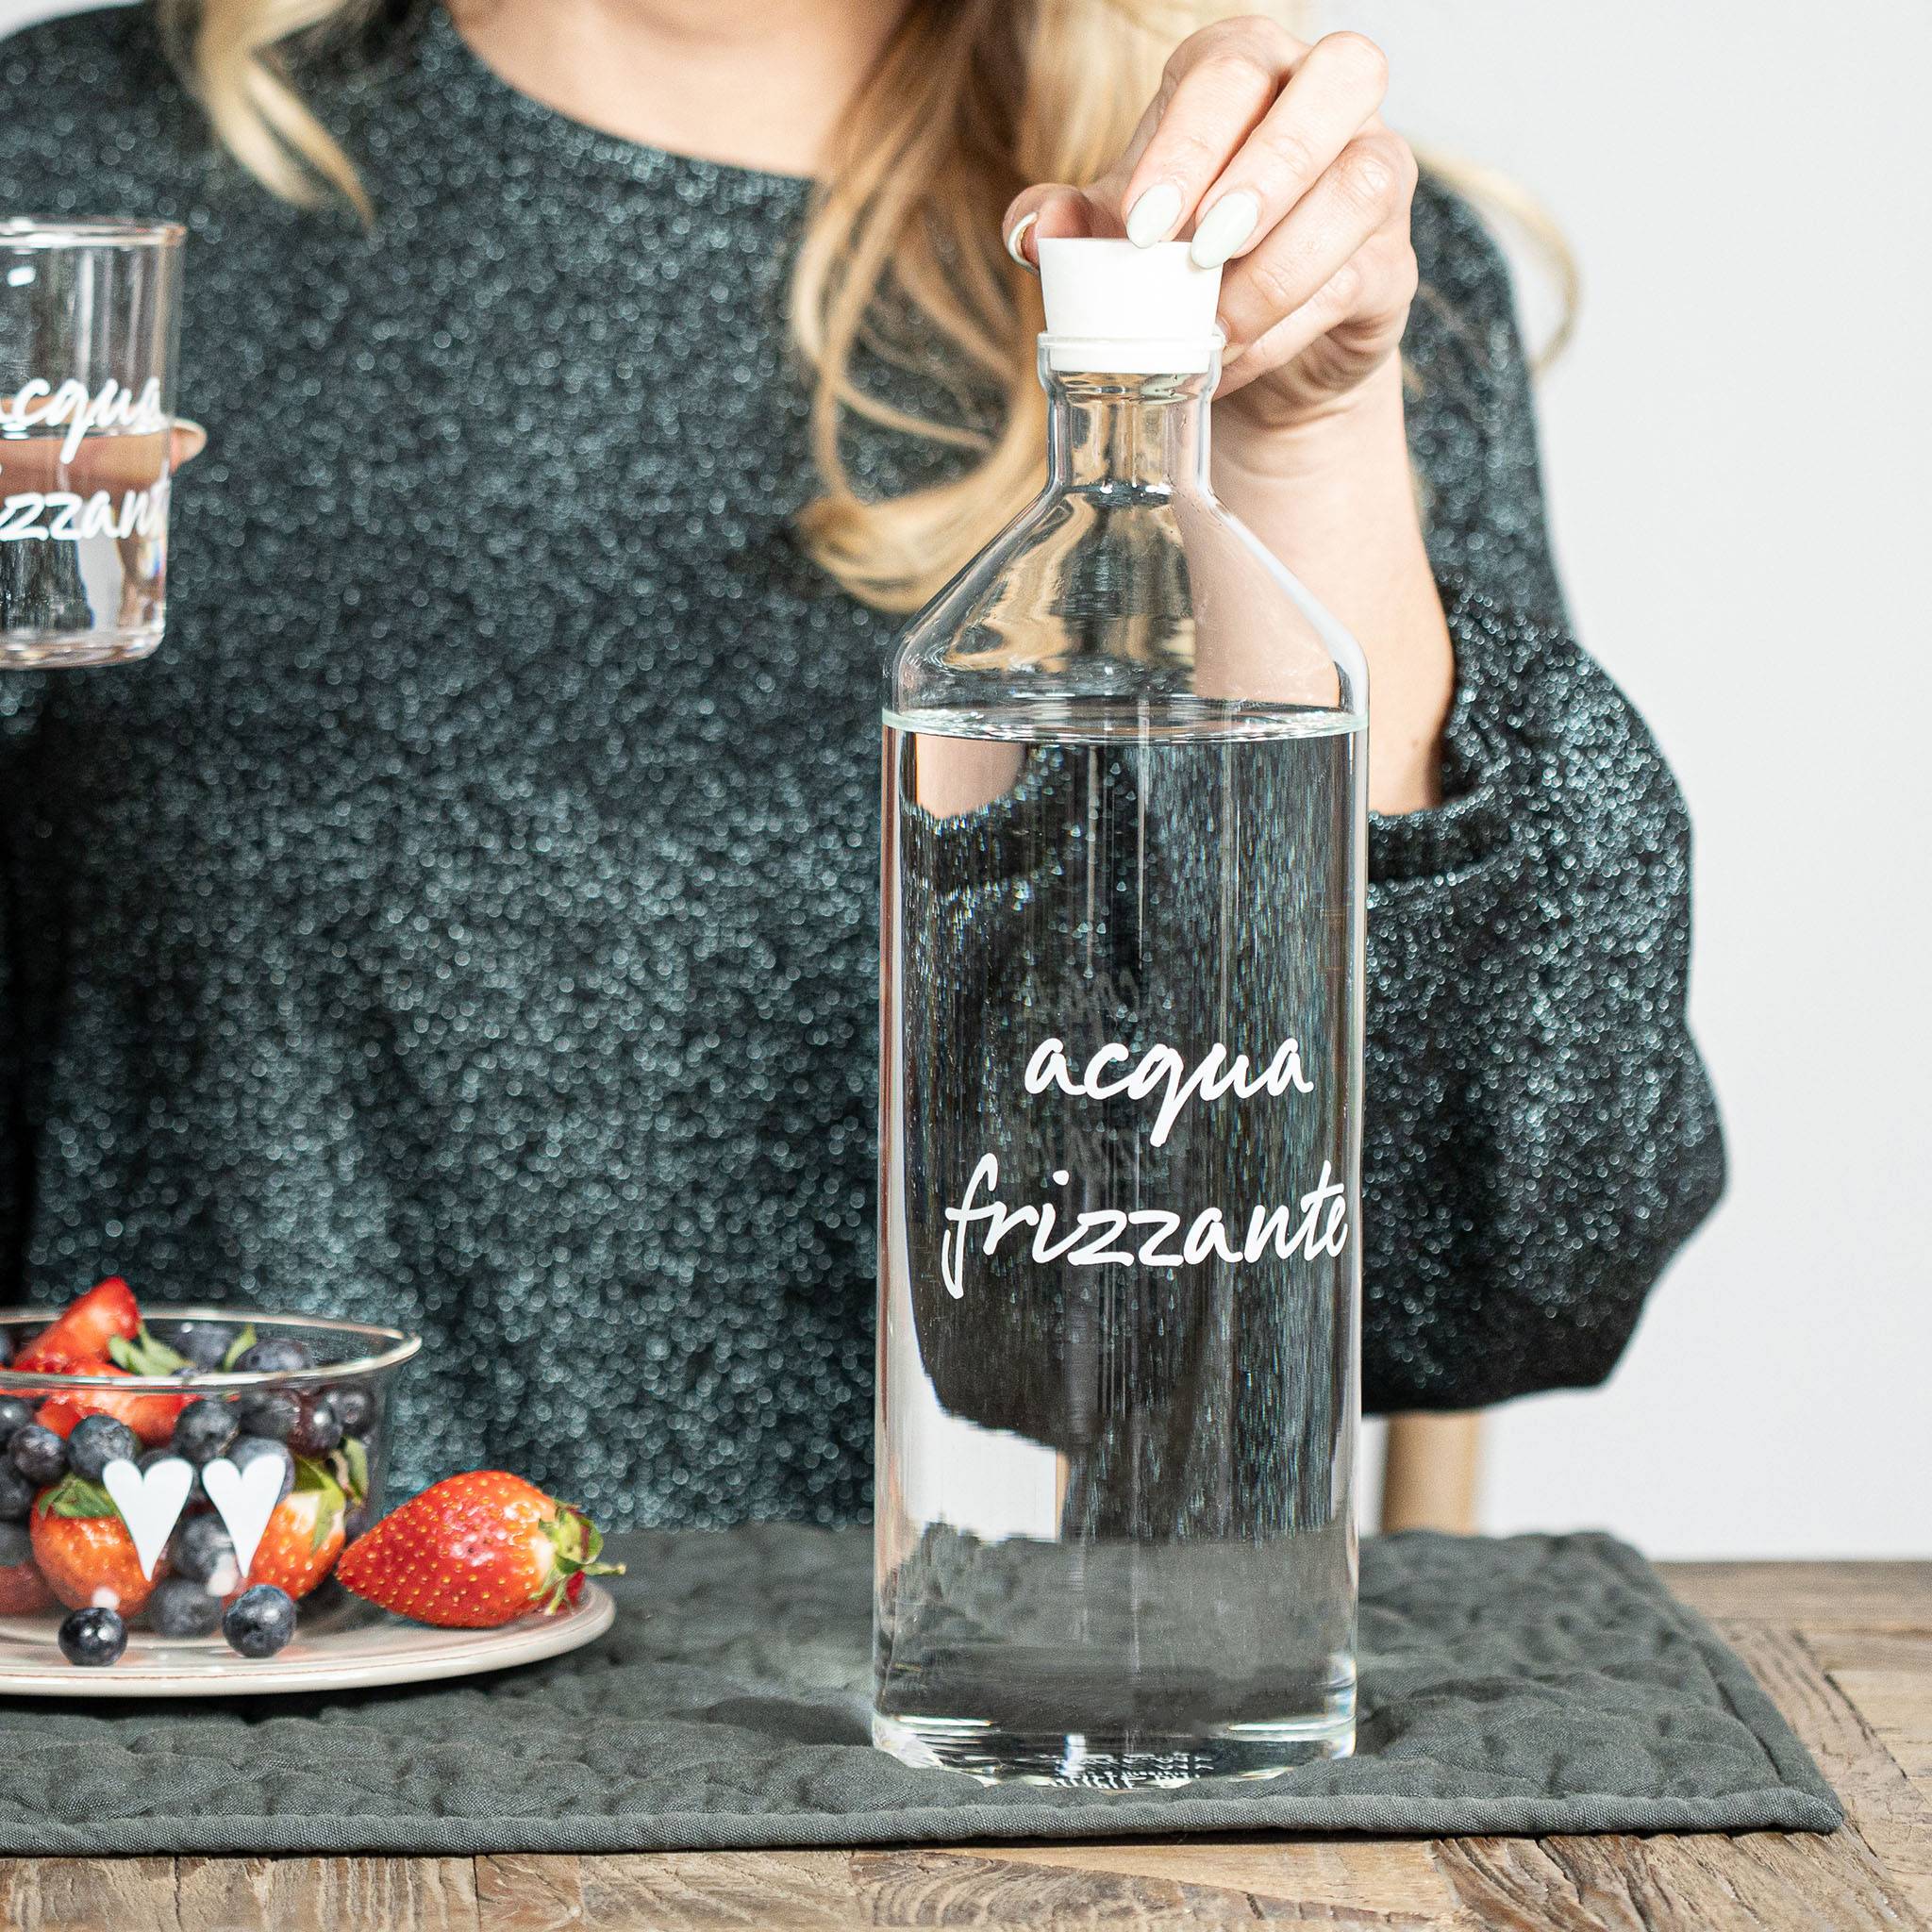 Wasserflasche "Acqua Frizzante"